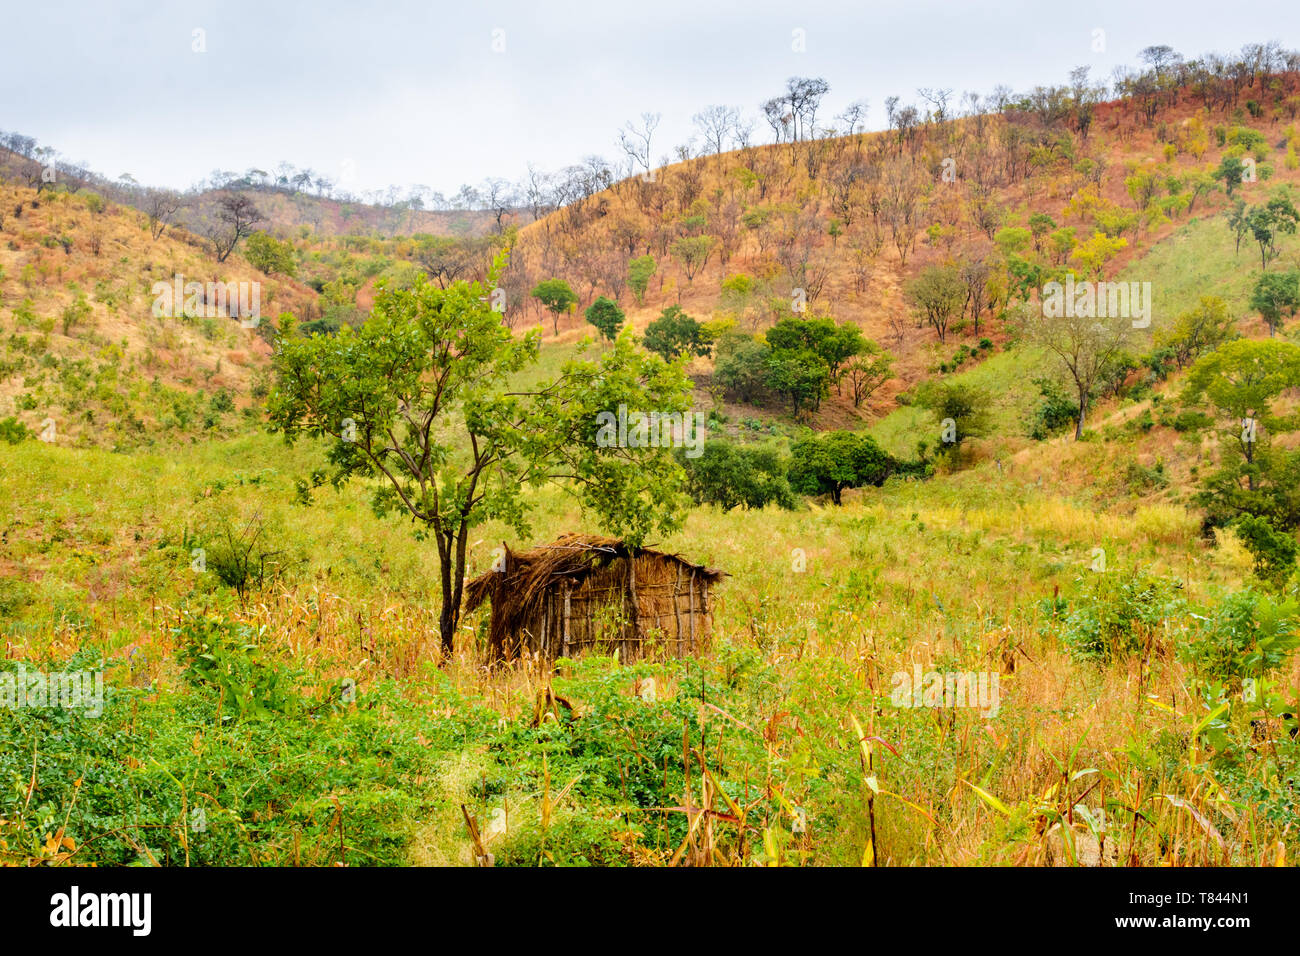 Casa de pasto solitario parado en un valle de una zona montañosa que hasta hace poco era muy boscosa en la frontera entre Malawi y Nsanje Mozambiq Foto de stock